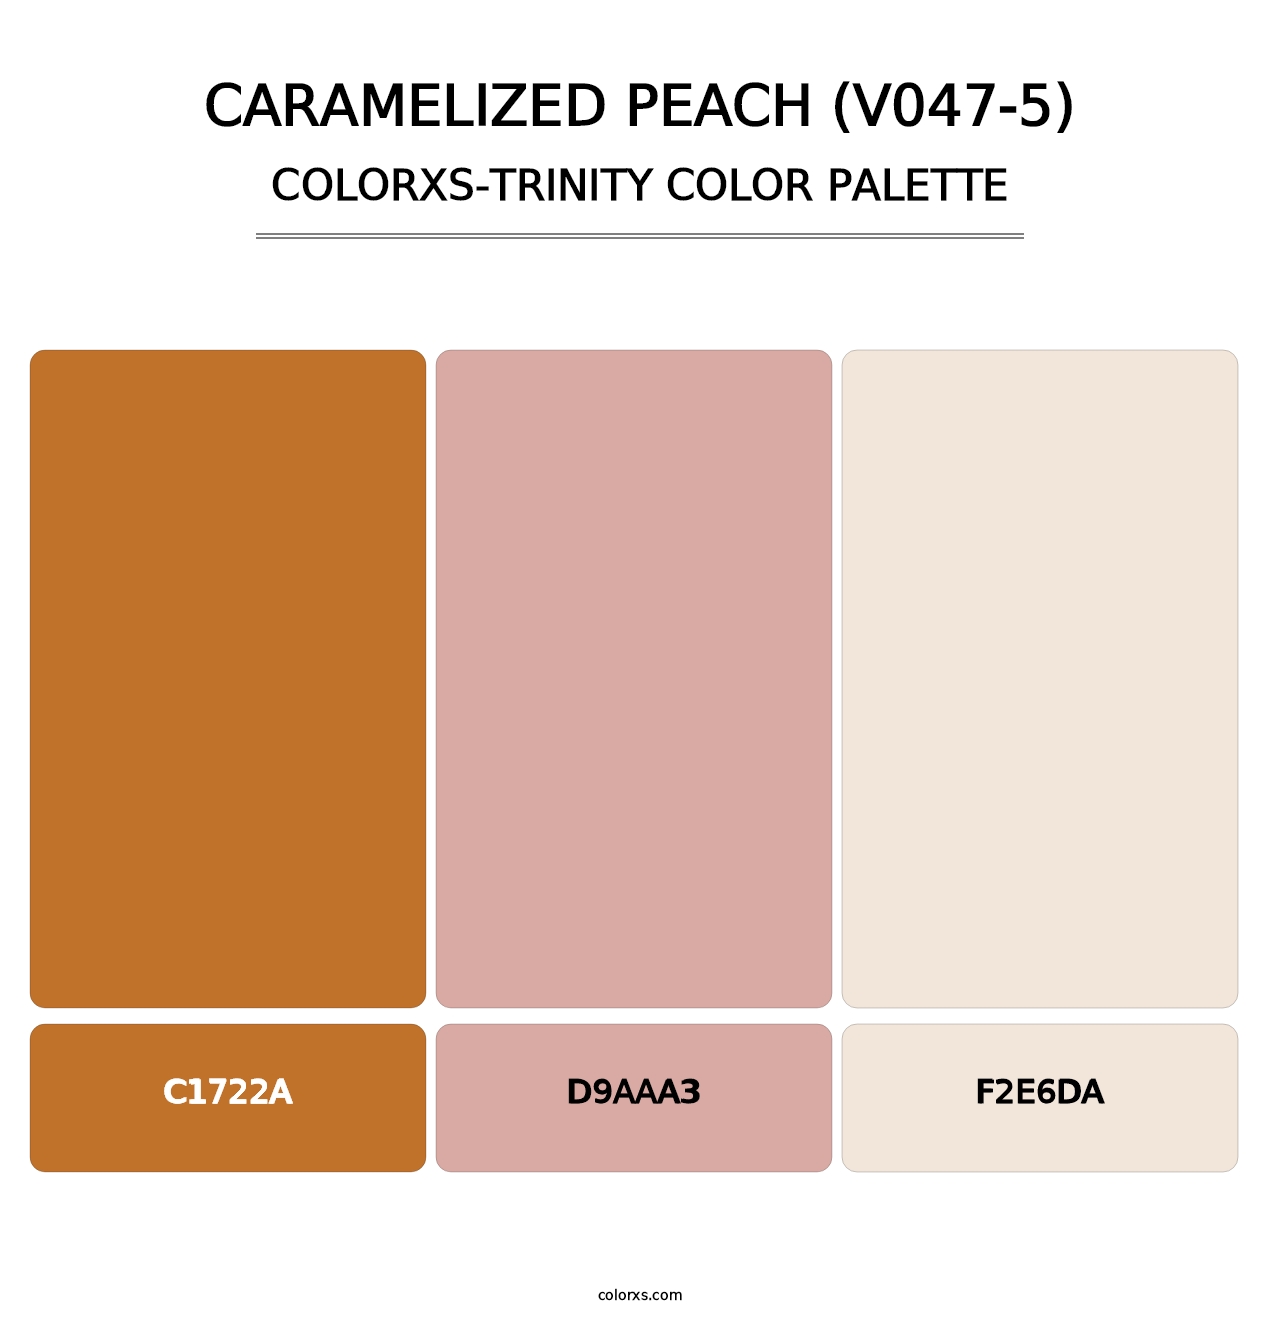 Caramelized Peach (V047-5) - Colorxs Trinity Palette